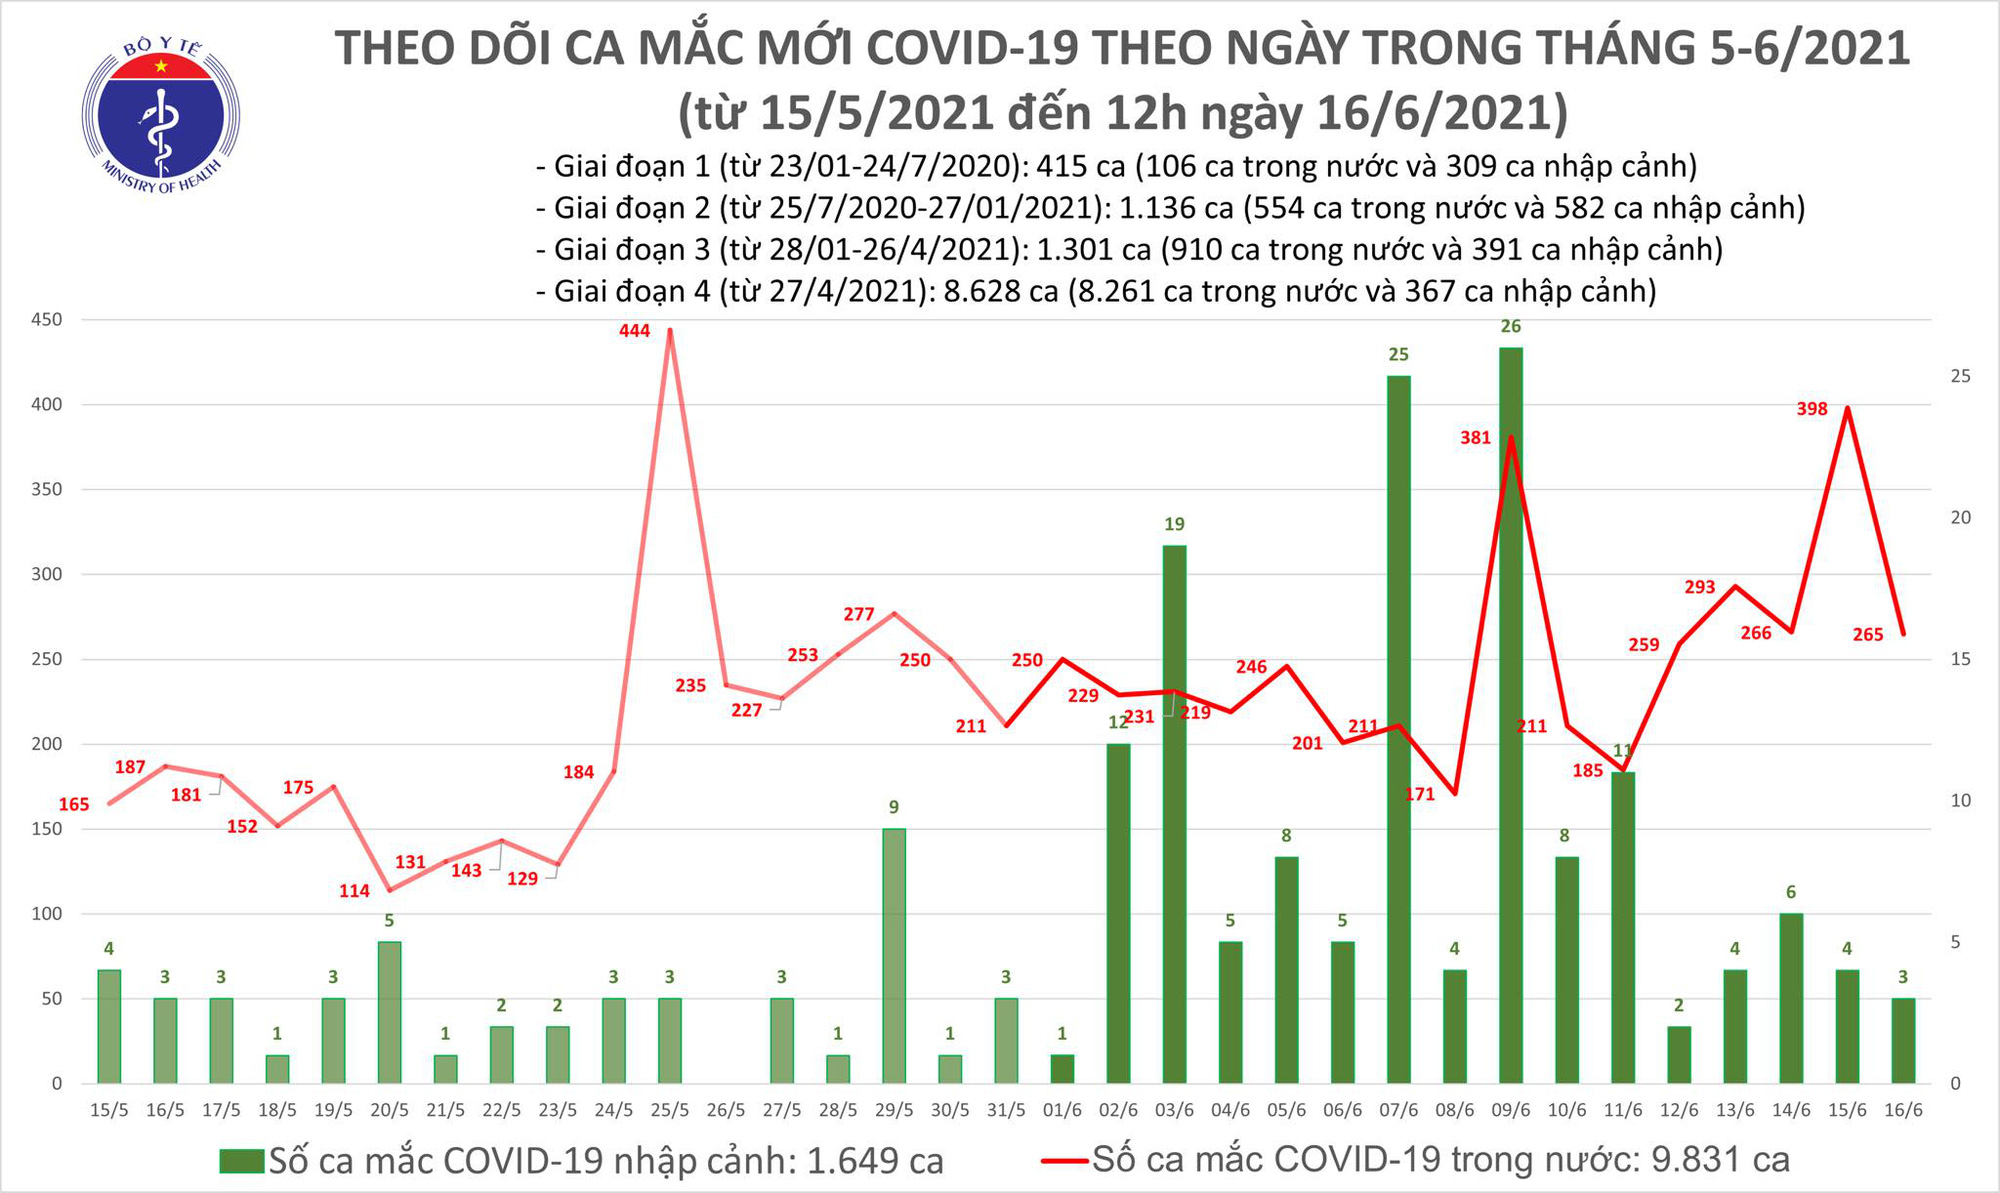 Thêm 176 ca Covid-19 mới, Bắc Giang, TP HCM vẫn nóng - Ảnh 1.